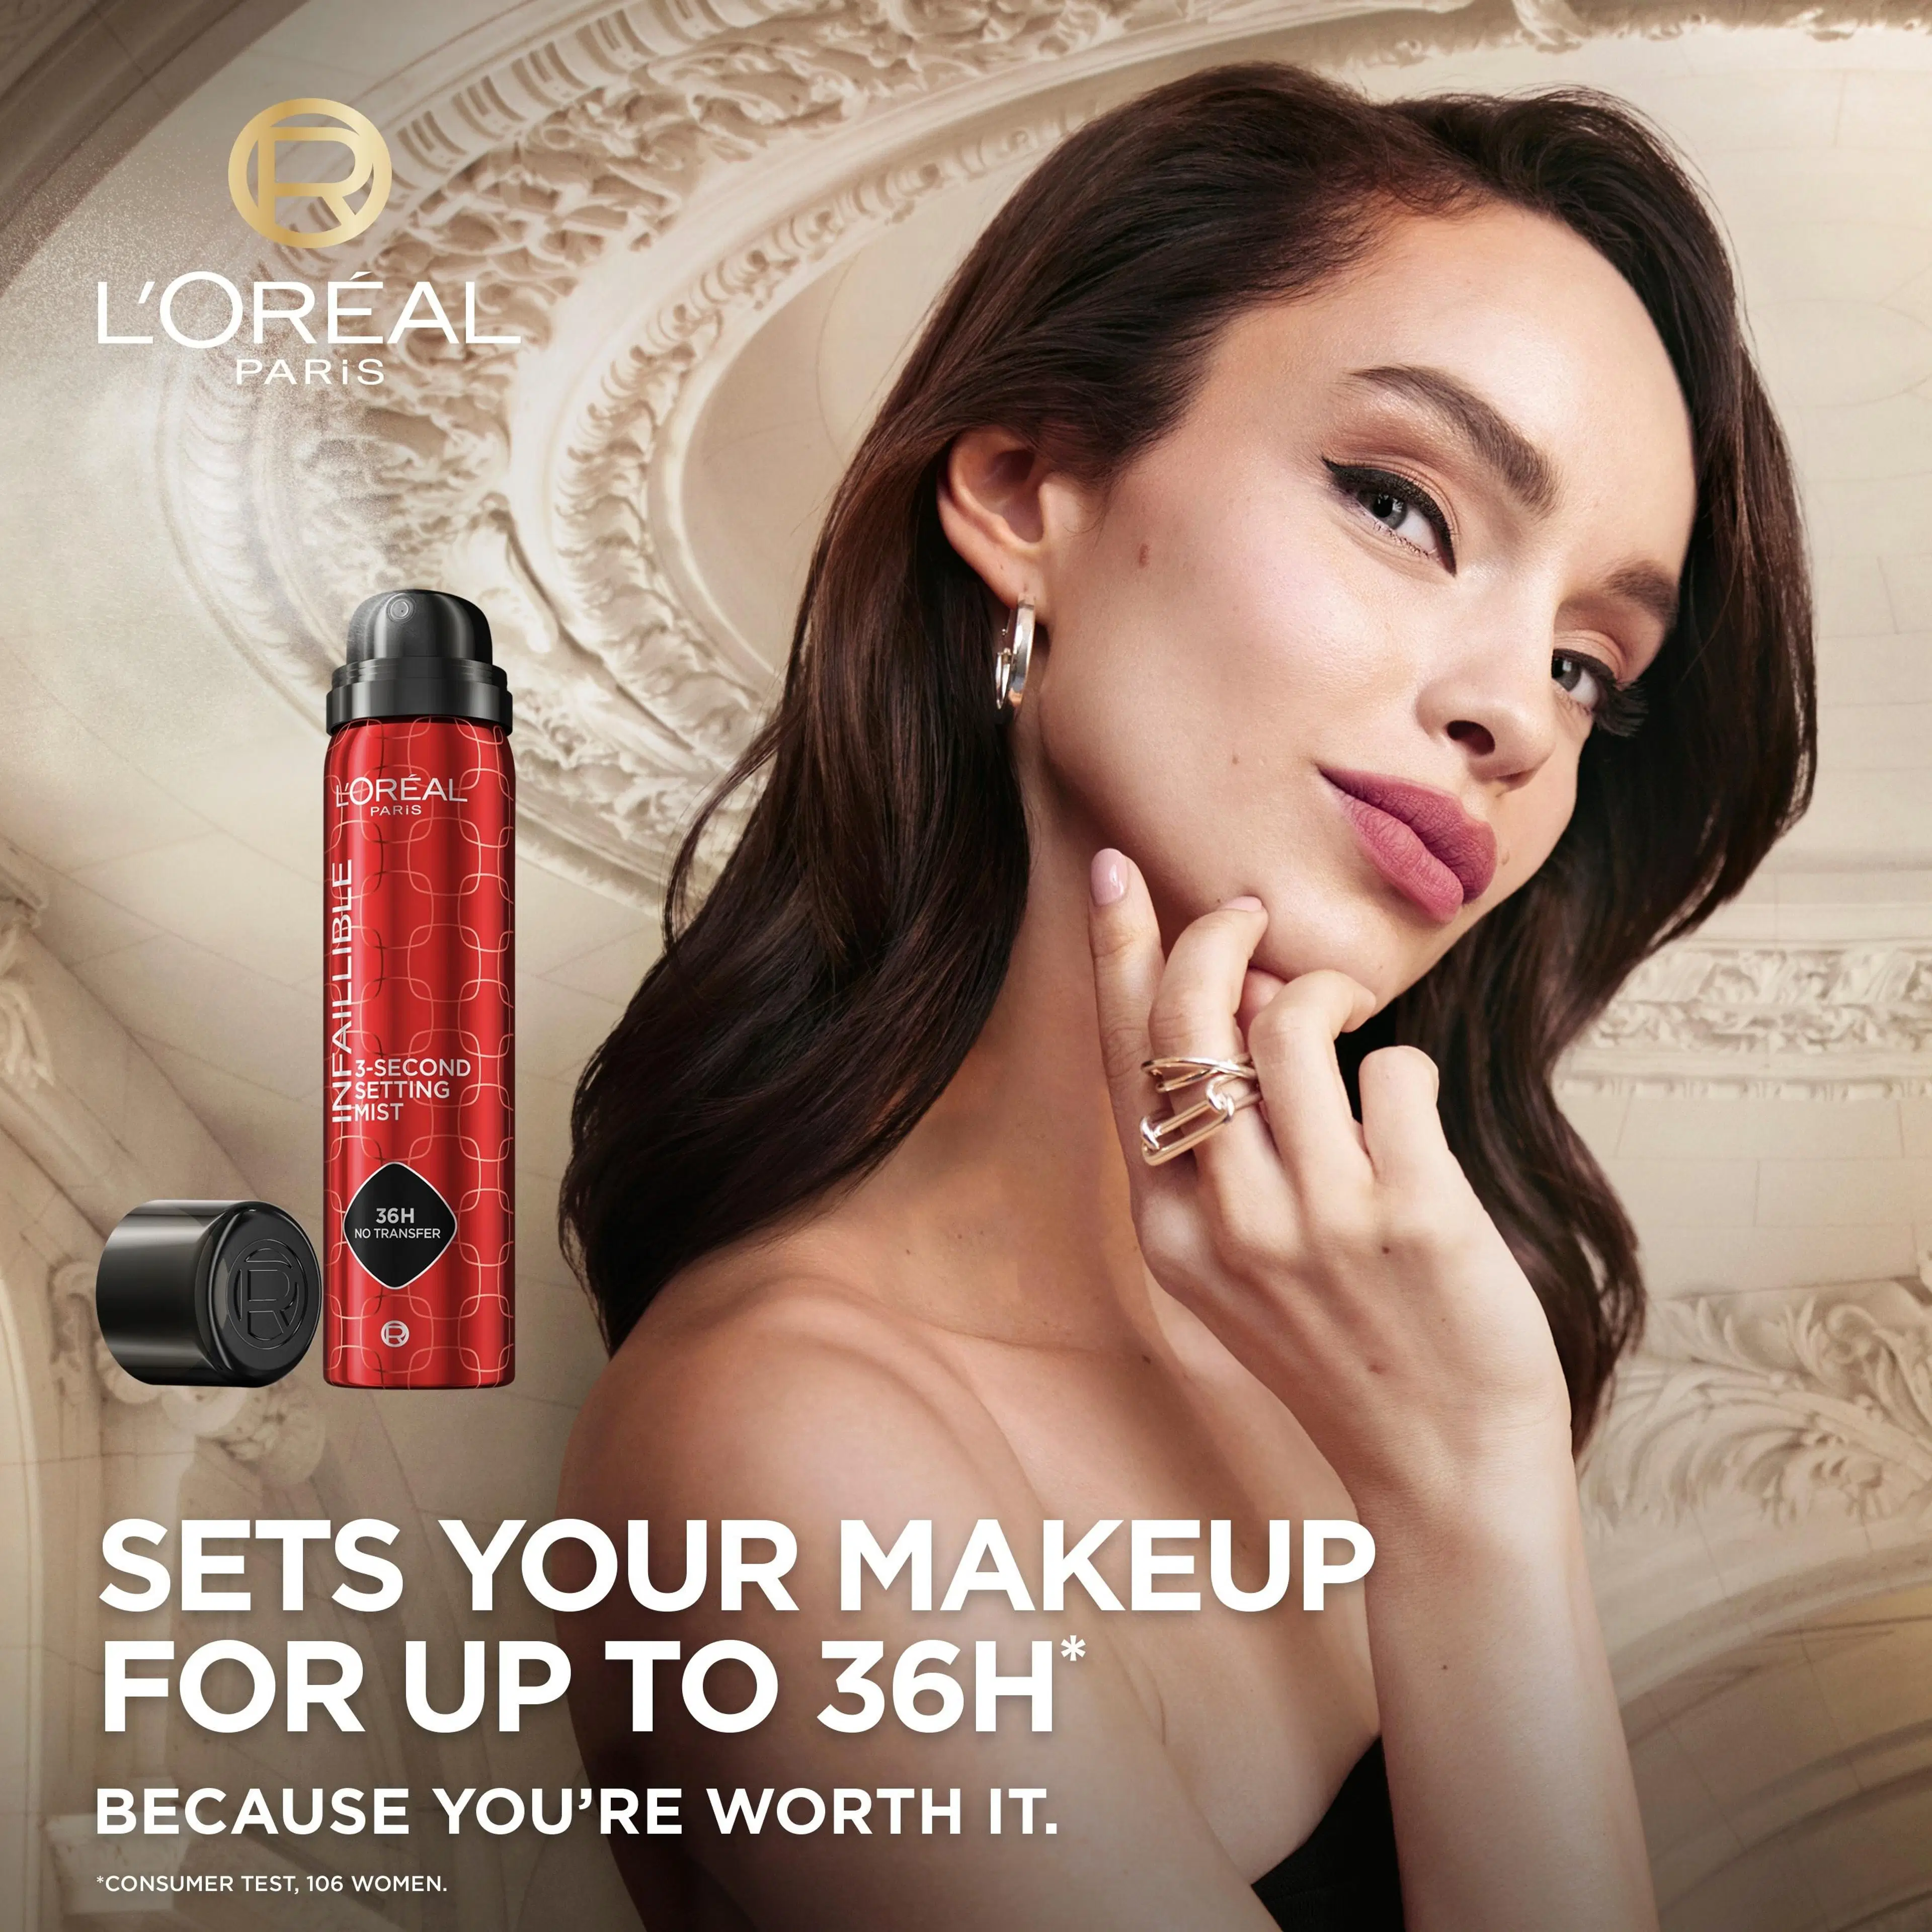 L'Oréal Paris Infaillible 3-Second Setting Mist meikinkiinnityssuihke 75ml